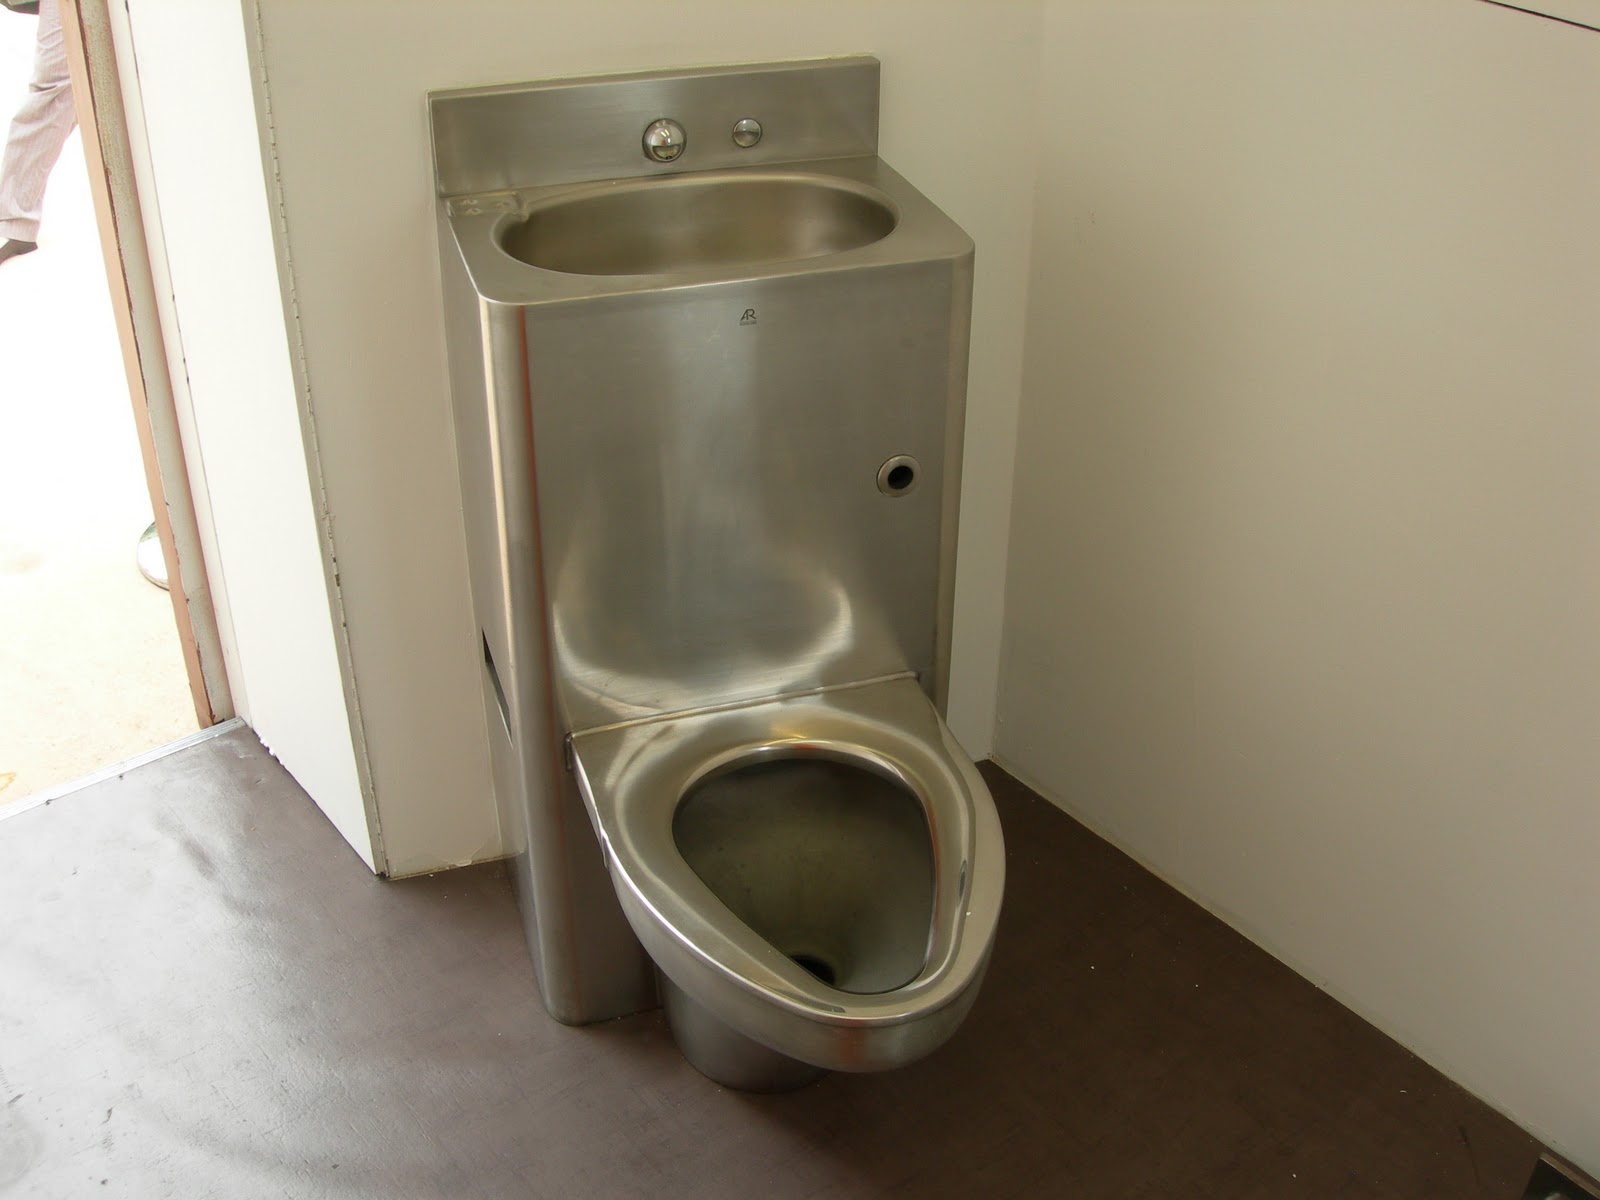 http://1.bp.blogspot.com/_6p3UFHZzS8I/TUxIah8NXzI/AAAAAAAAADs/D7-b-ouHphs/s1600/Amnesty-gitmo-cell-toilet.jpg